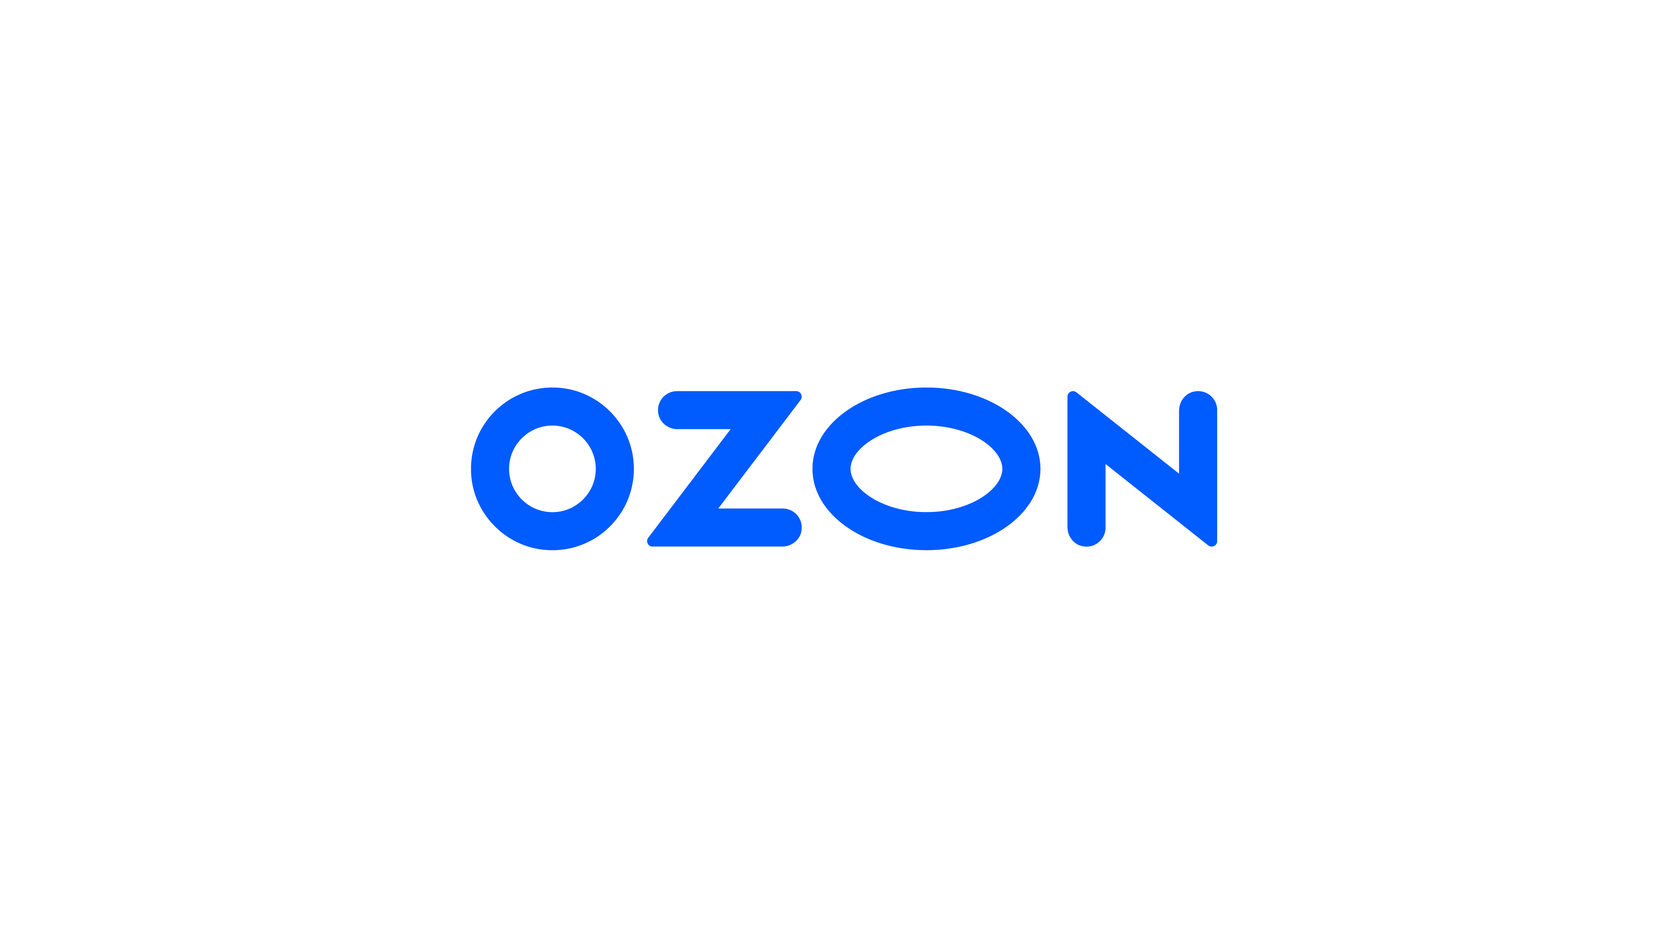 ozon-new-logo-01